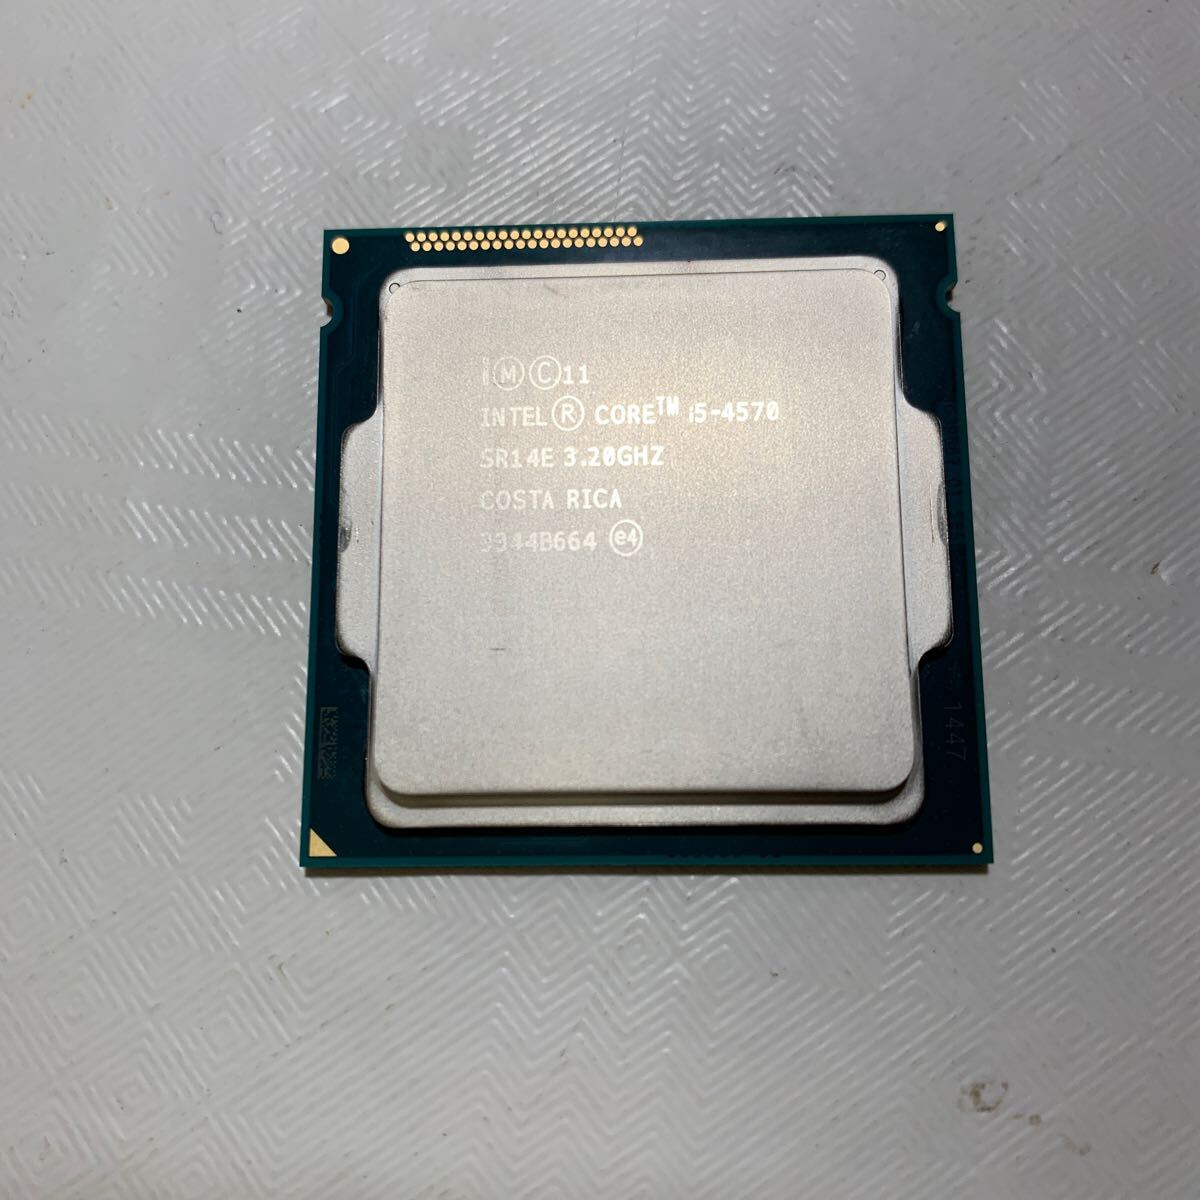 CPU プロセッサー Intel CORE i5-4570 SR14E 3.20GHz COSTA RICA 3344B664の画像1